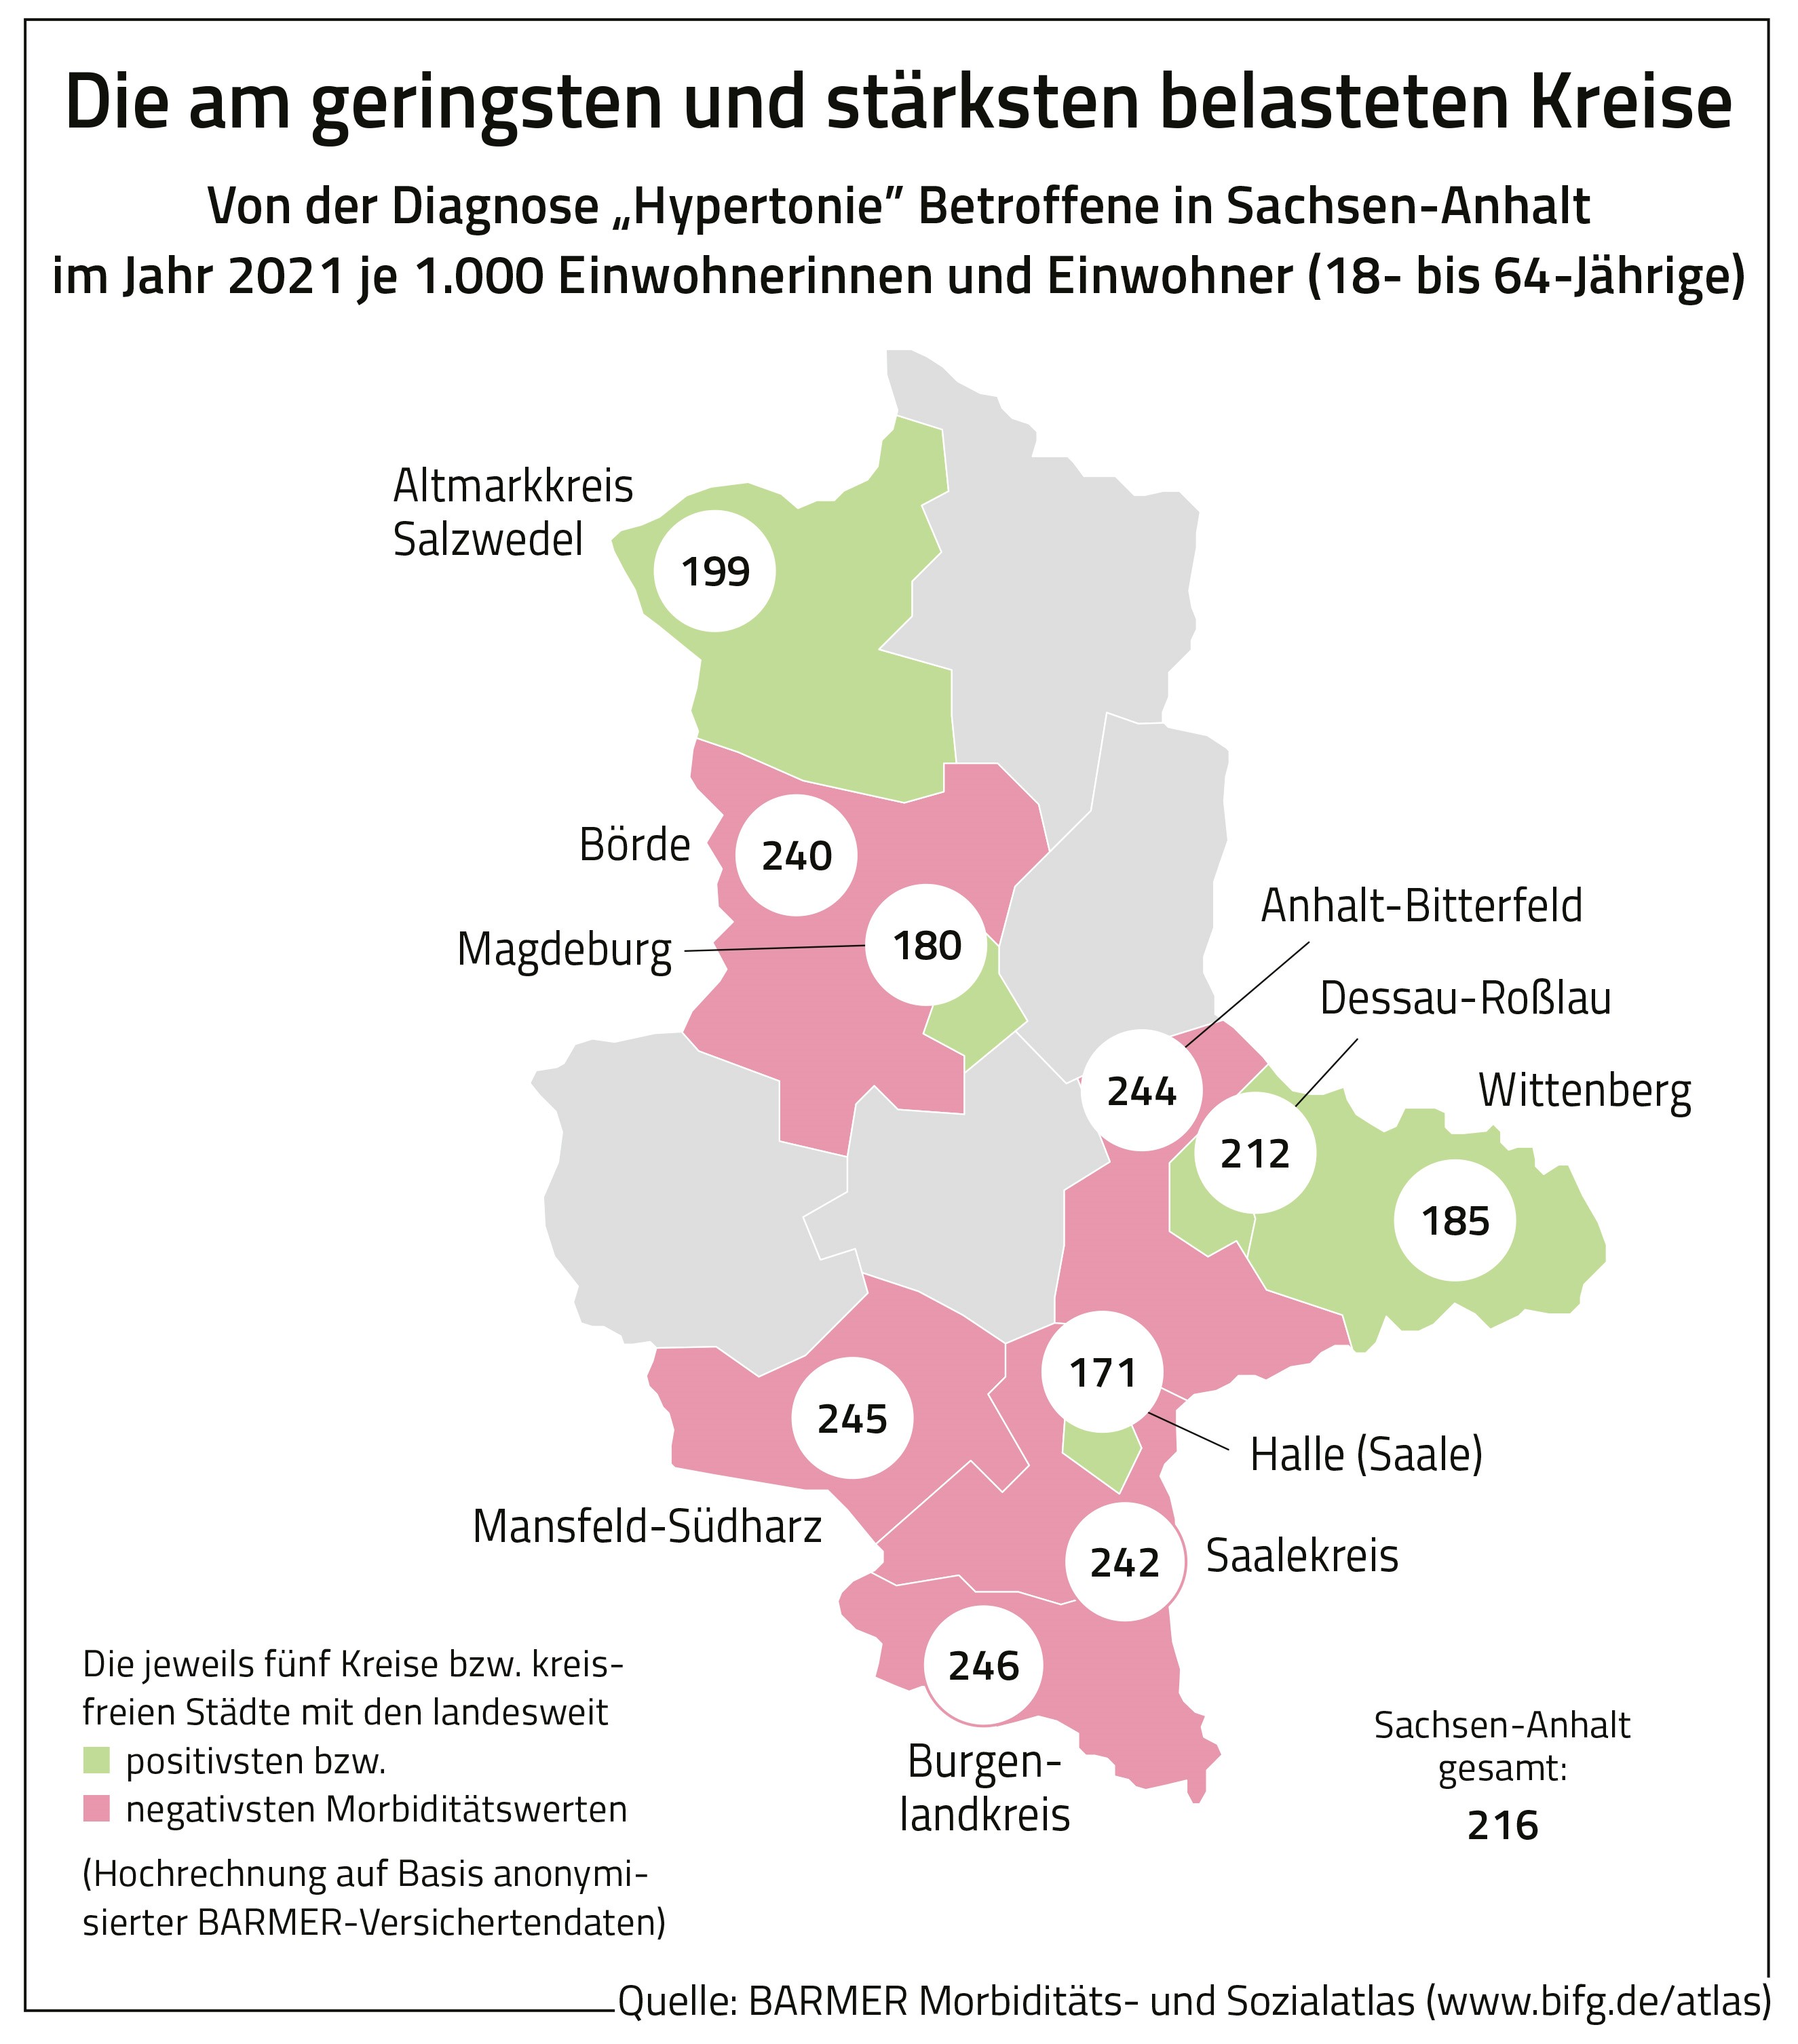 Die Belastung der Landreise in Sachsen-Anhalt in Bezug auf Hypertonie.